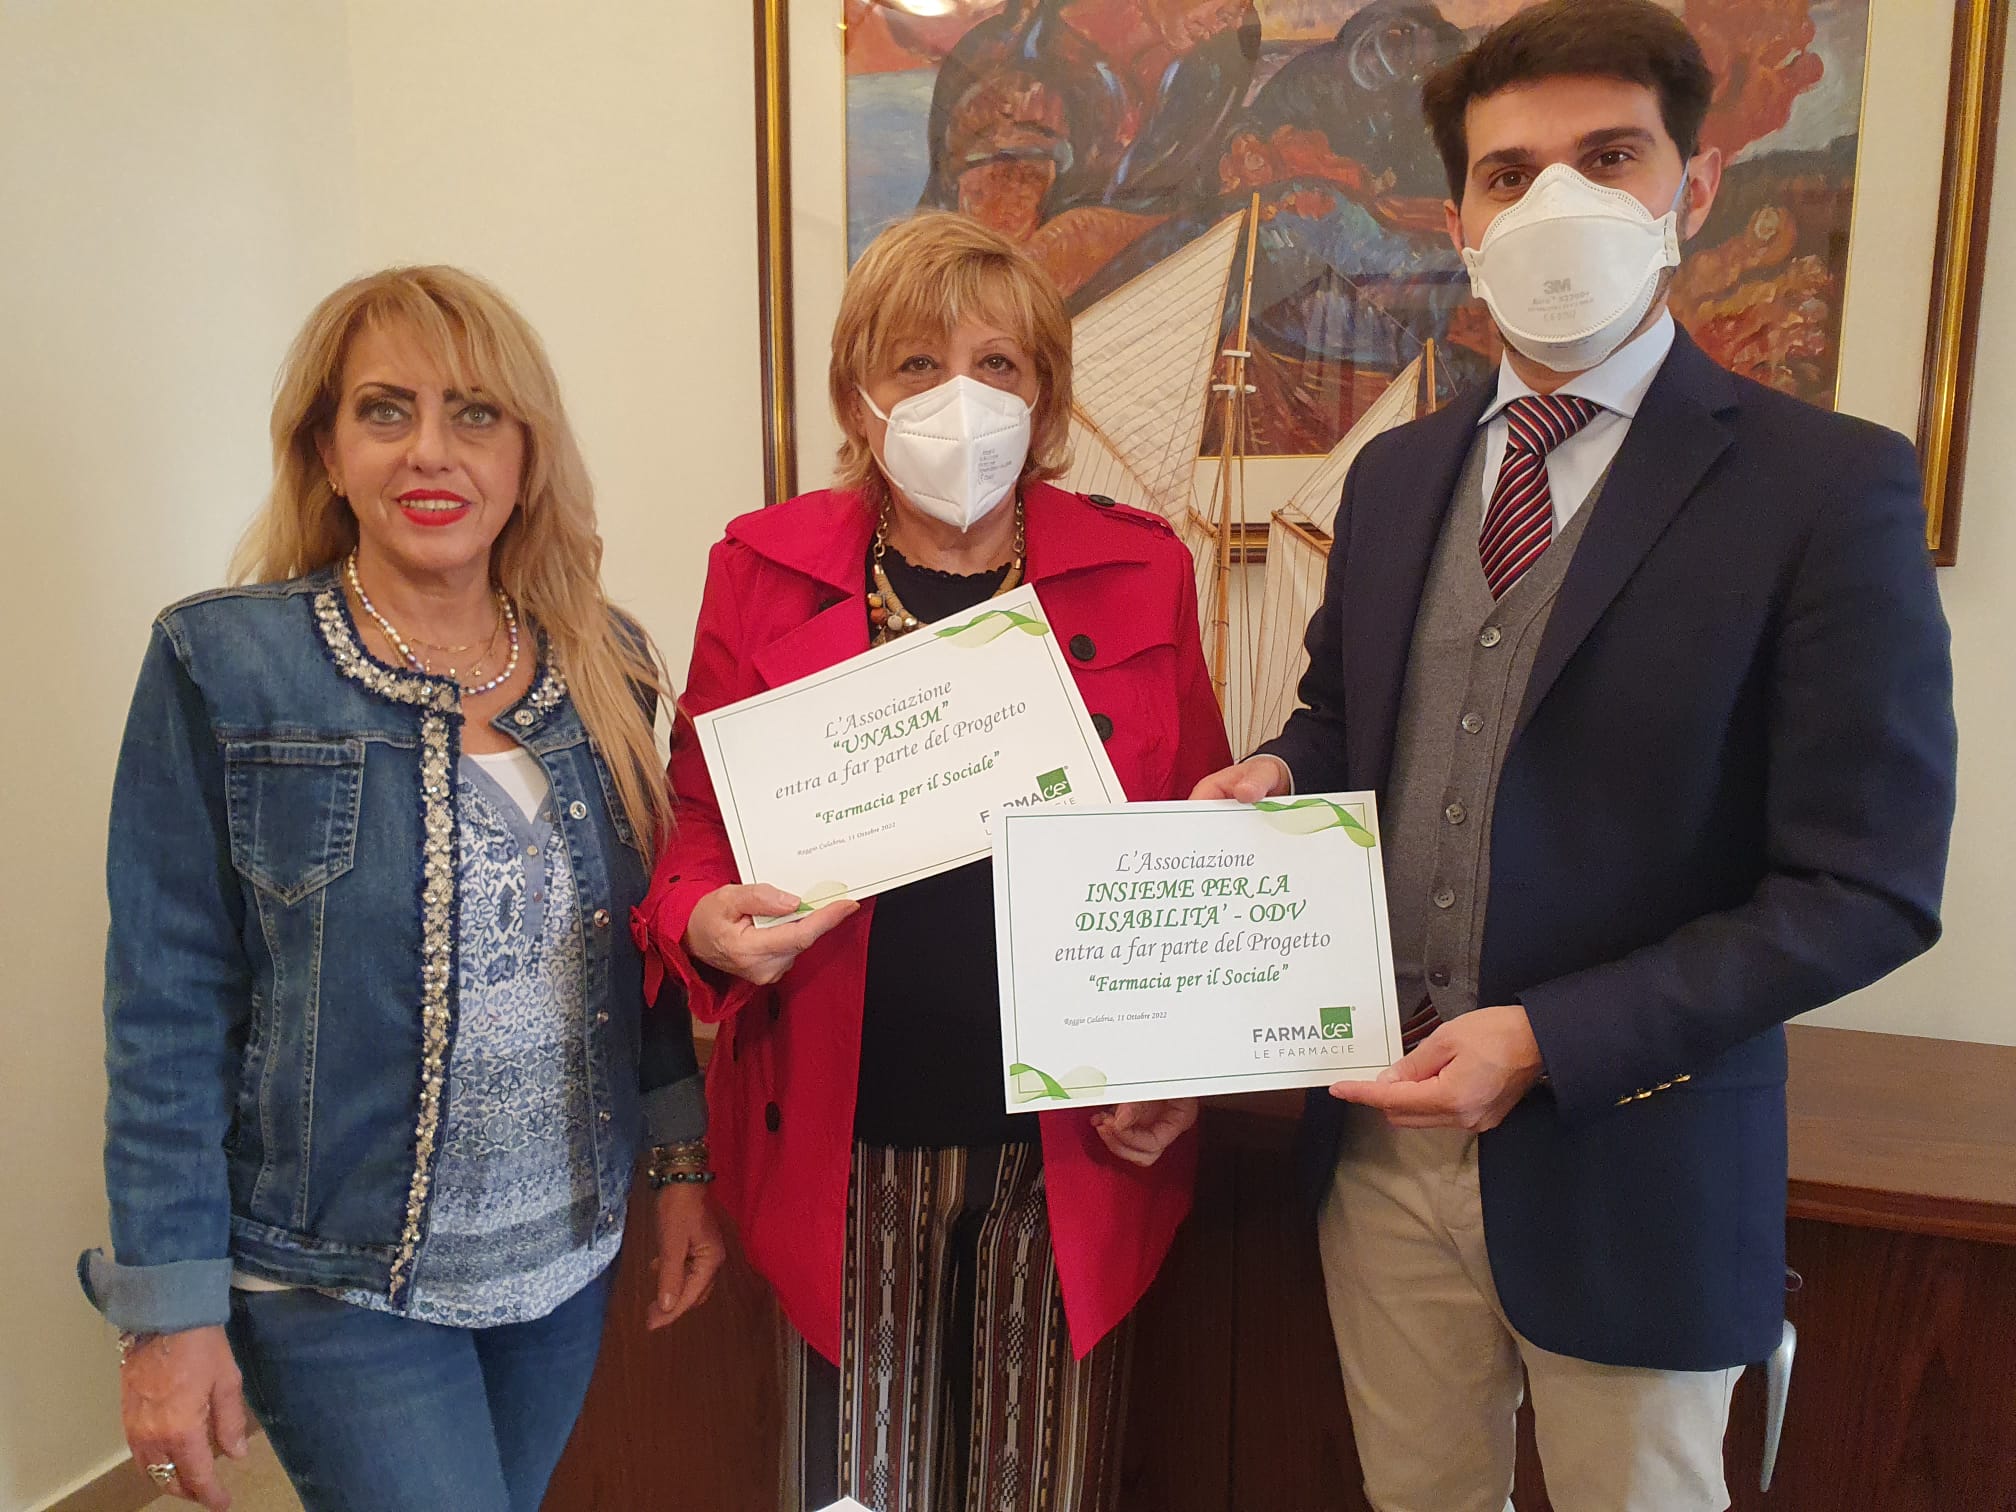 Unasam Calabria e Insieme per la disabilità aderiscono a Farmacia per il sociale